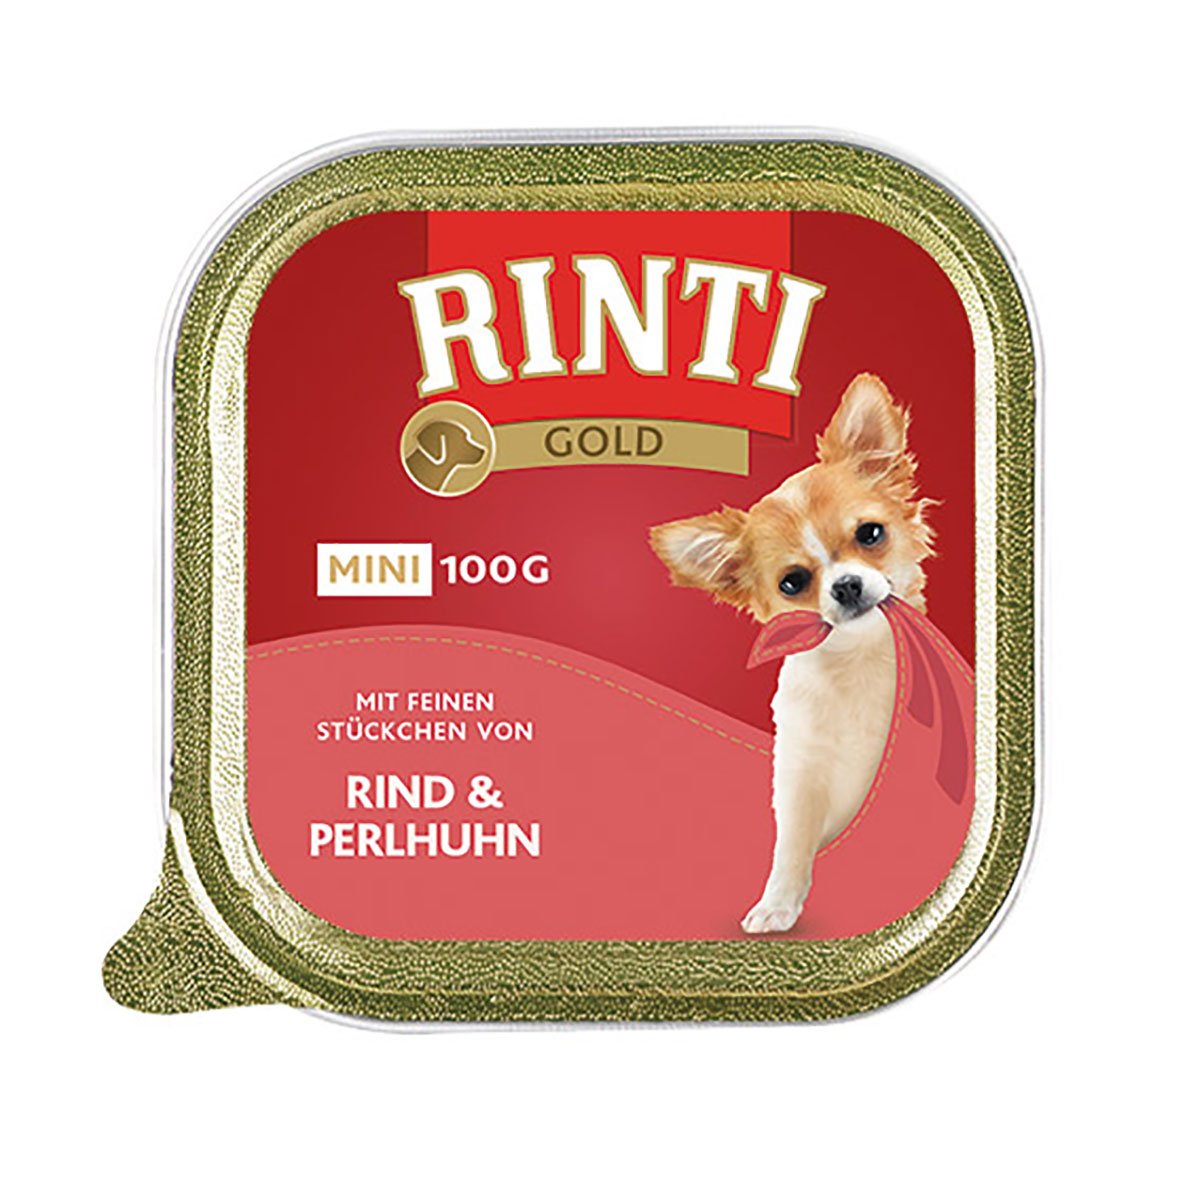 Rinti Gold Mini feine Stückchen von Rind & Perlhuhn 16x100g